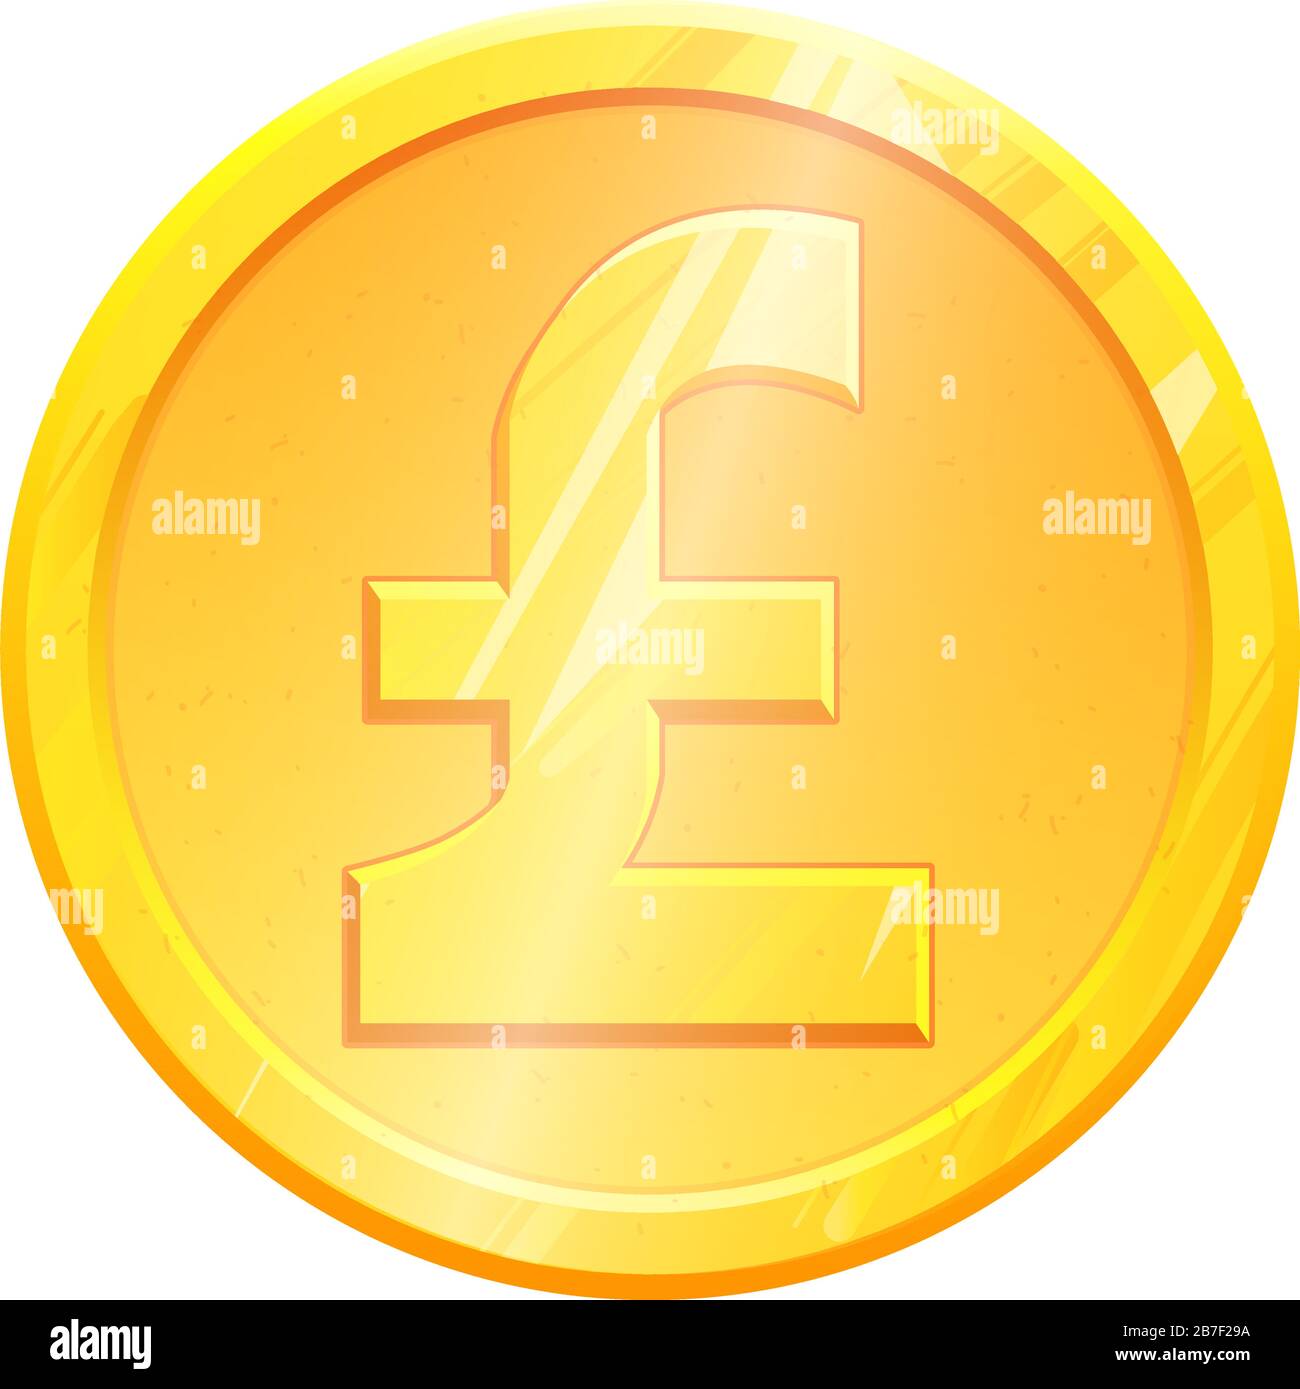 GBP-Symbol für Goldpfund-Sterling-Münzen auf weißem Hintergrund. Finanzierungskonzept. Abbildung: Exchange United Kingdom Currency Money Banking. Gewinn aus dem Geschäftsergebnis. Finanzzeichenvektor. Stock Vektor